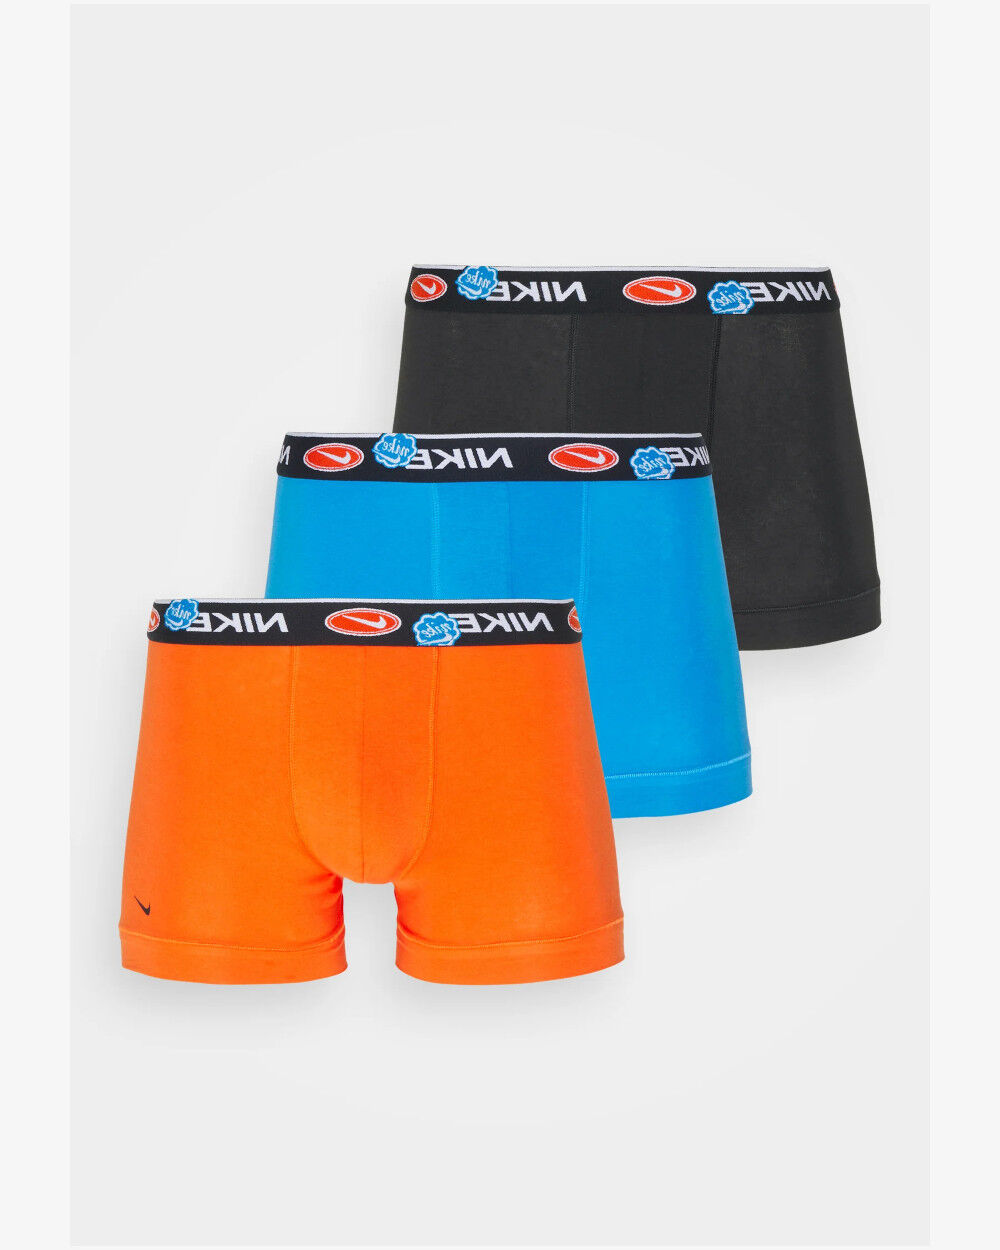 Nike Intimo slip mutande UOMO Underwear BRIEF Graphic 3 PACK Culotte cotone